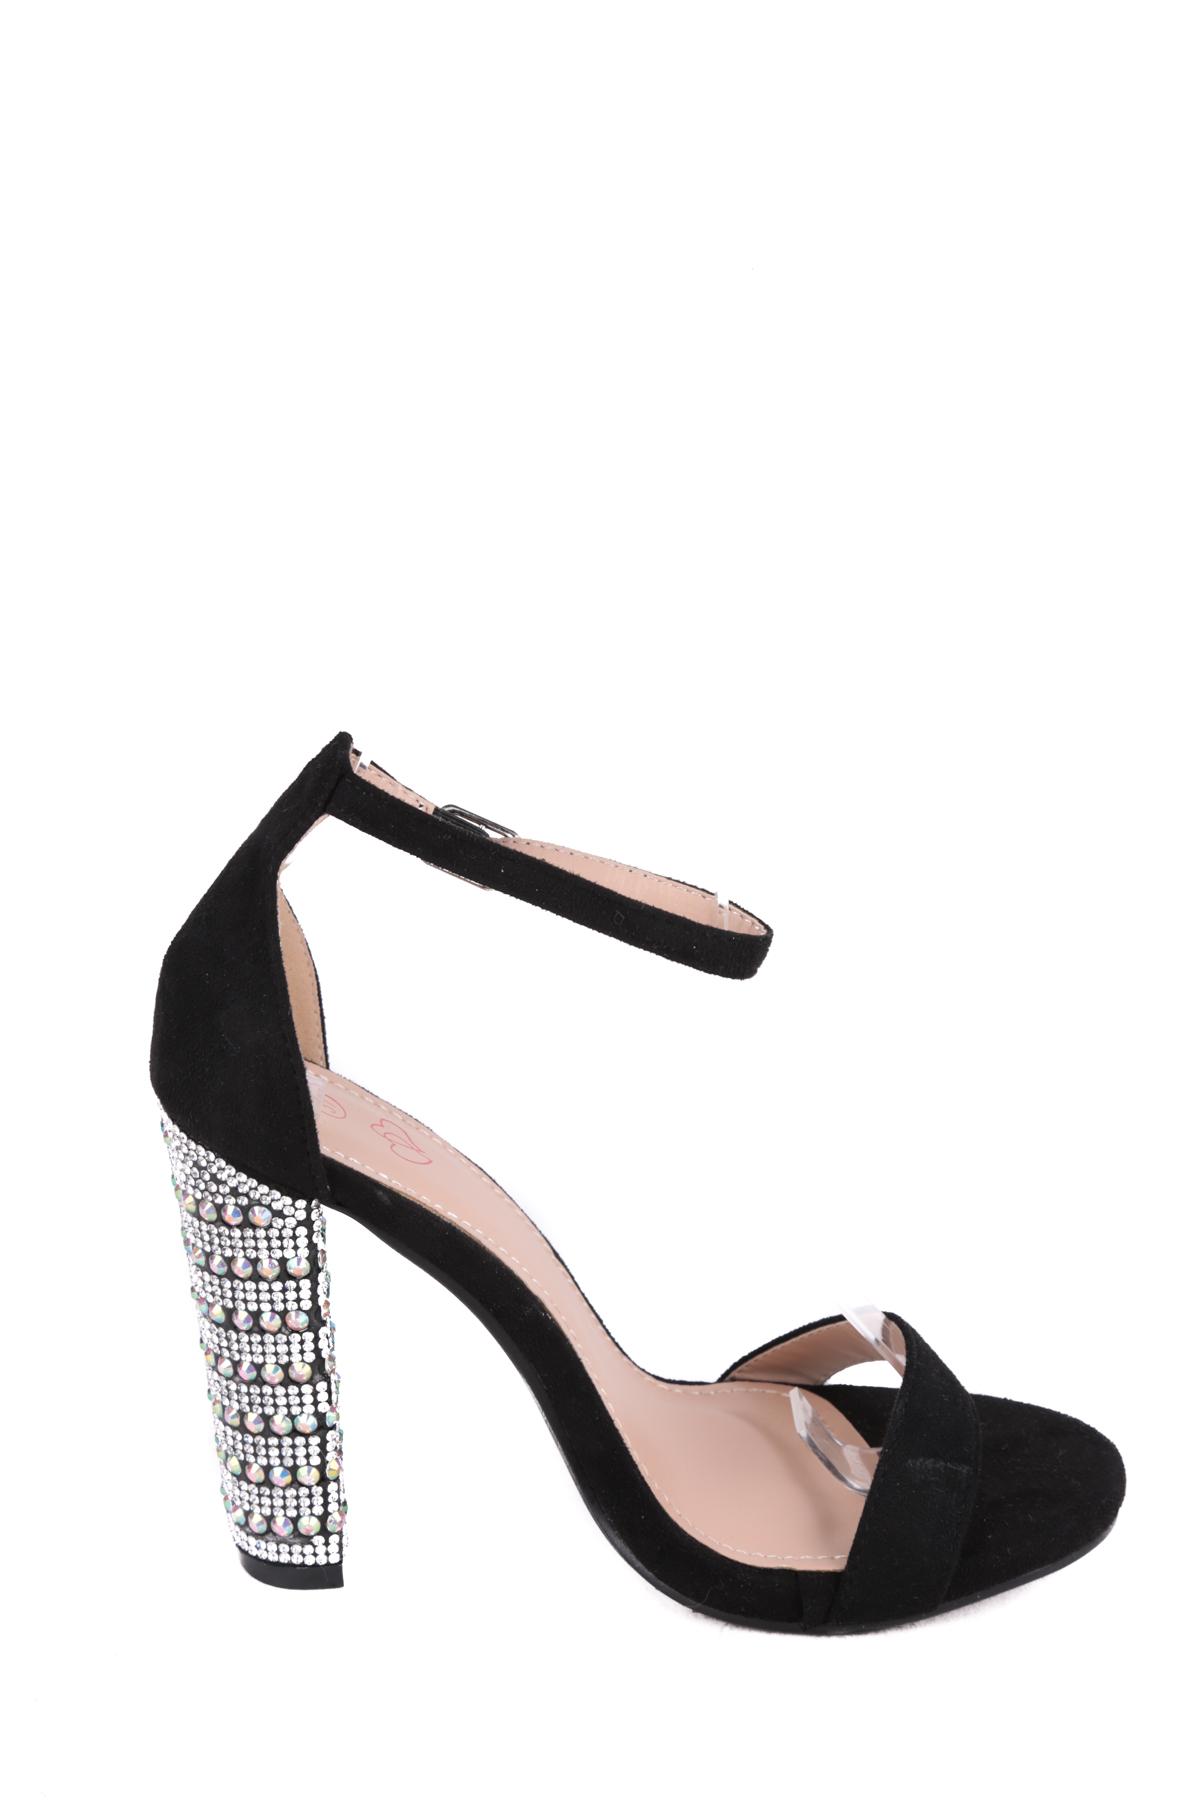 Tacones Zapatos Black WILEDI A1288-8 #c Efashion Paris